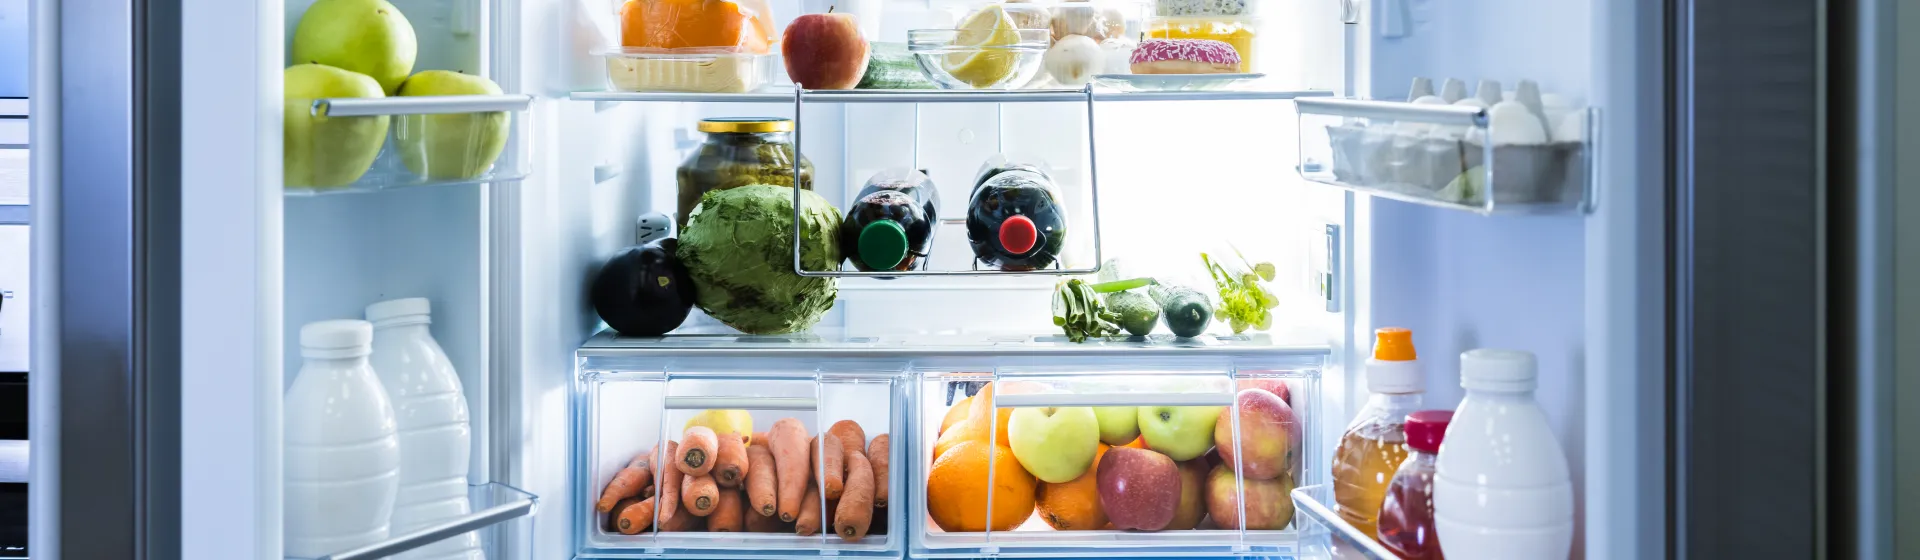 Melhor geladeira custo-benefício: as principais opções em 2022